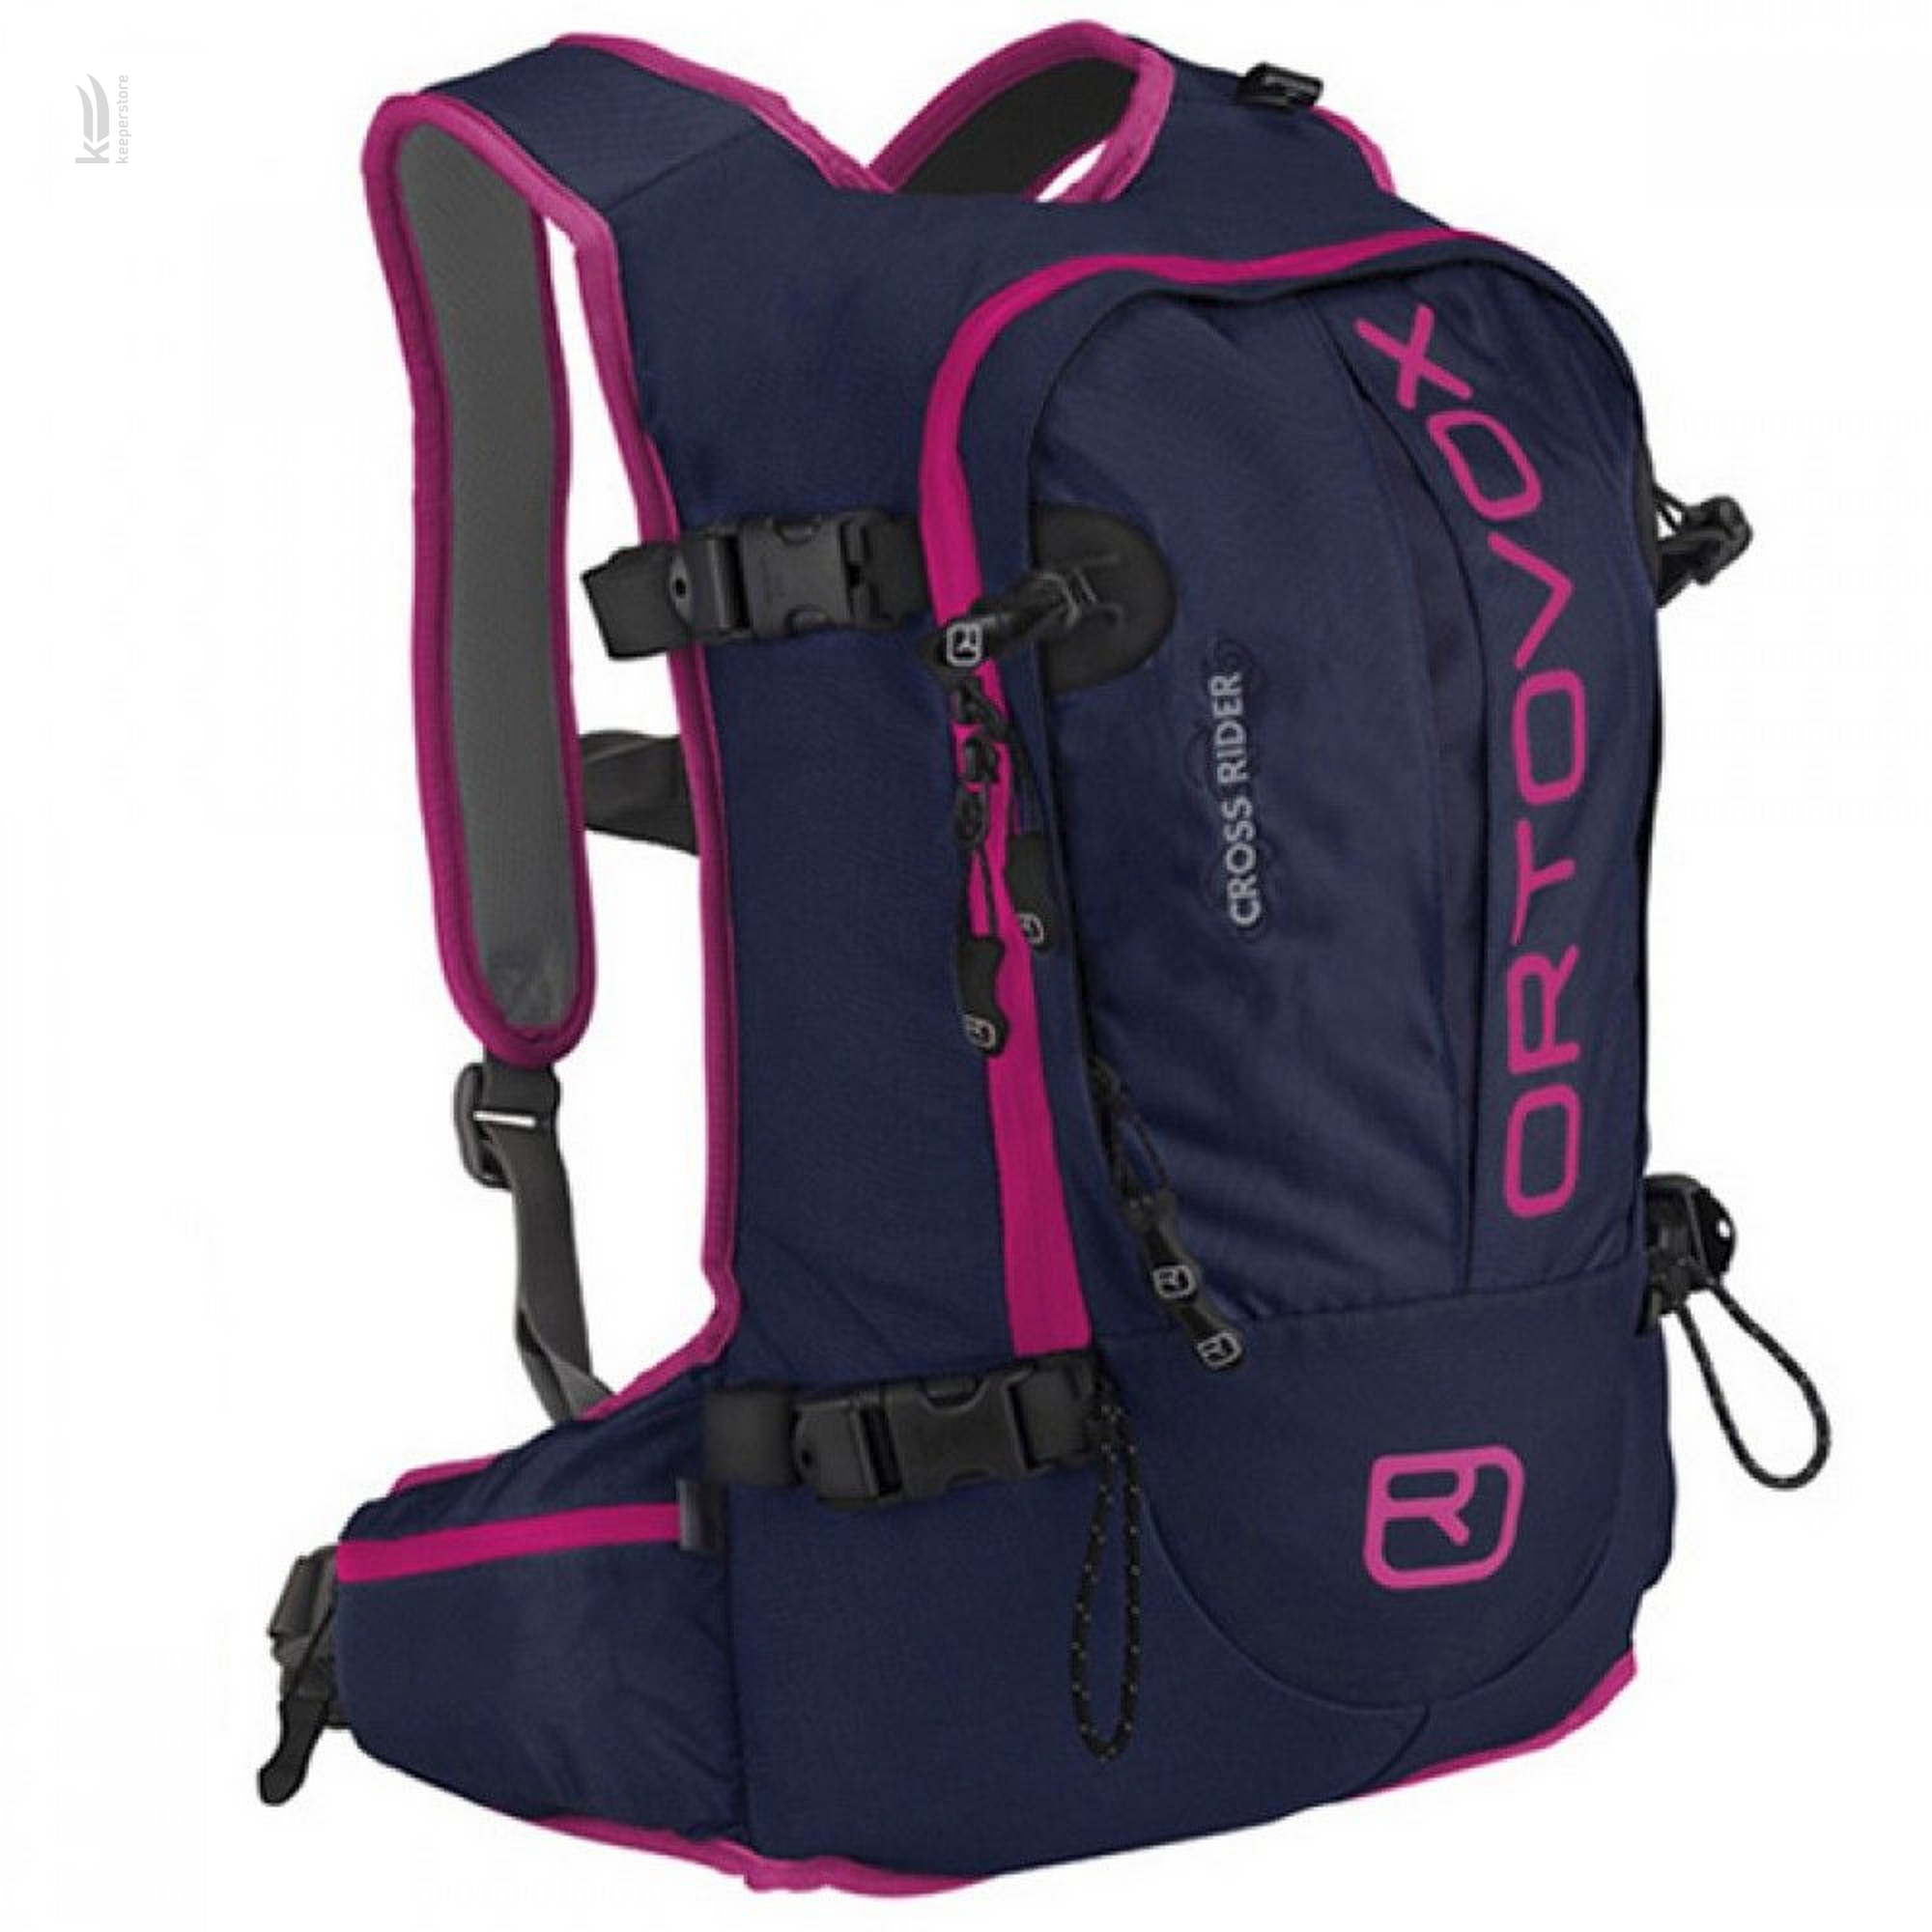 Горнолыжный рюкзак с защитой спины Ortovox Cross Rider W Navy